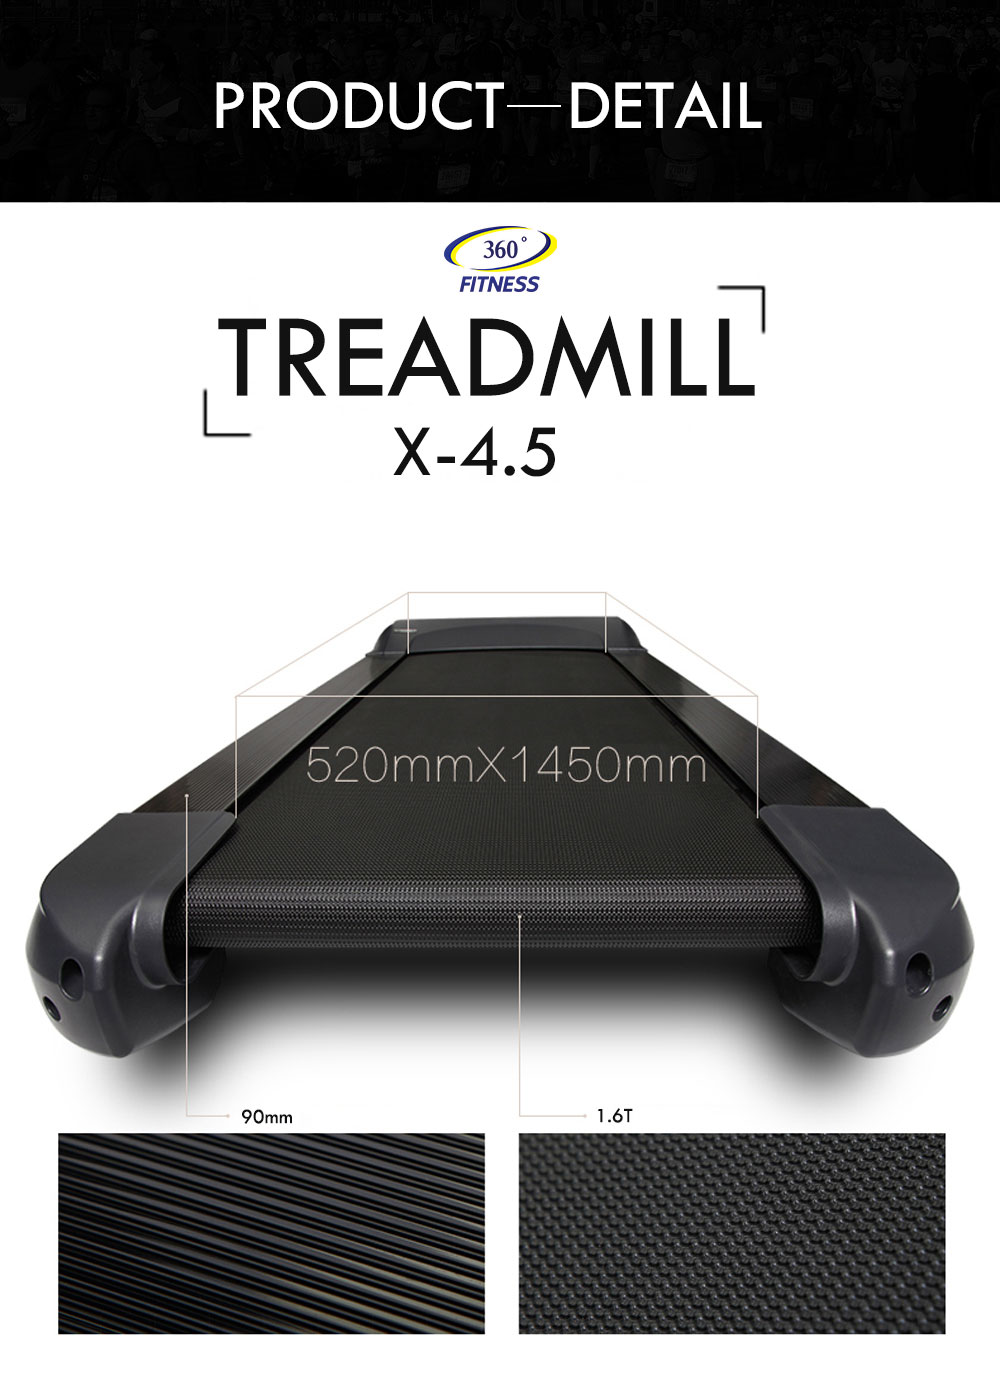 ลู่วิ่งไฟฟ้า 360 องศา ฟิตเนส Commercial Treadmill X4.5 - AC 4.0 HP motor (motor peak 5.0HP) SH-T5170A motor AC